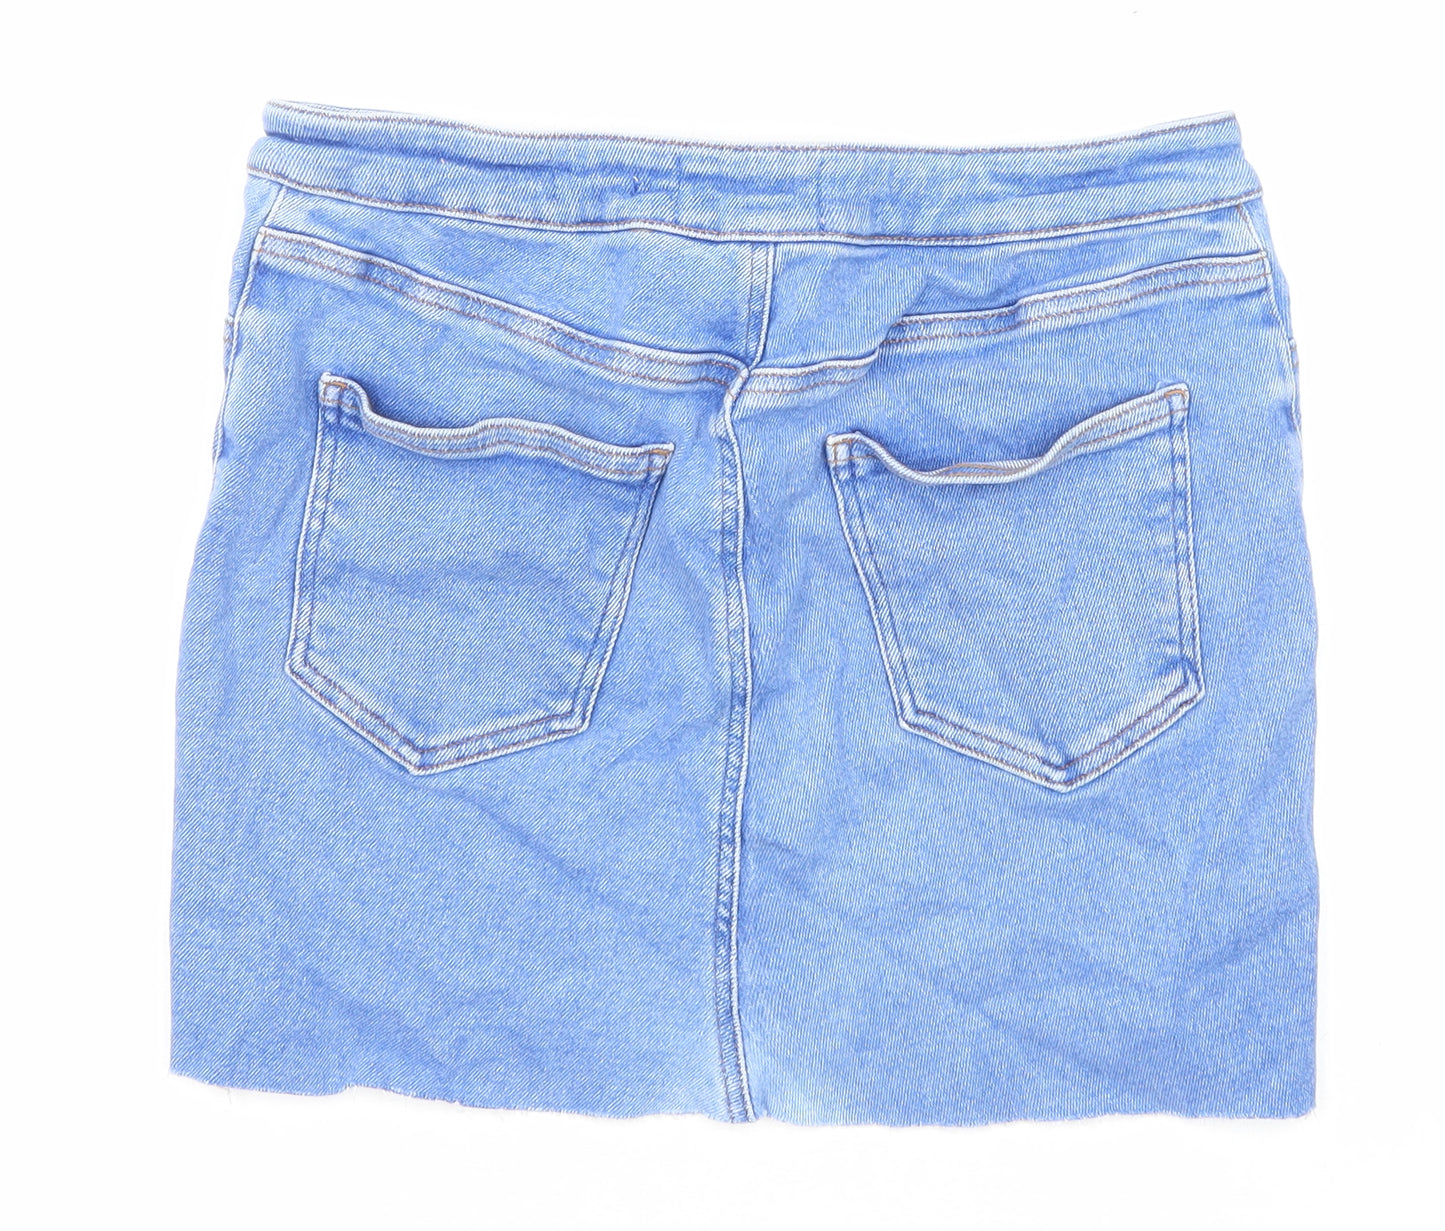 New Look Womens Blue Cotton A-Line Skirt Size 16 Zip - Raw Hem